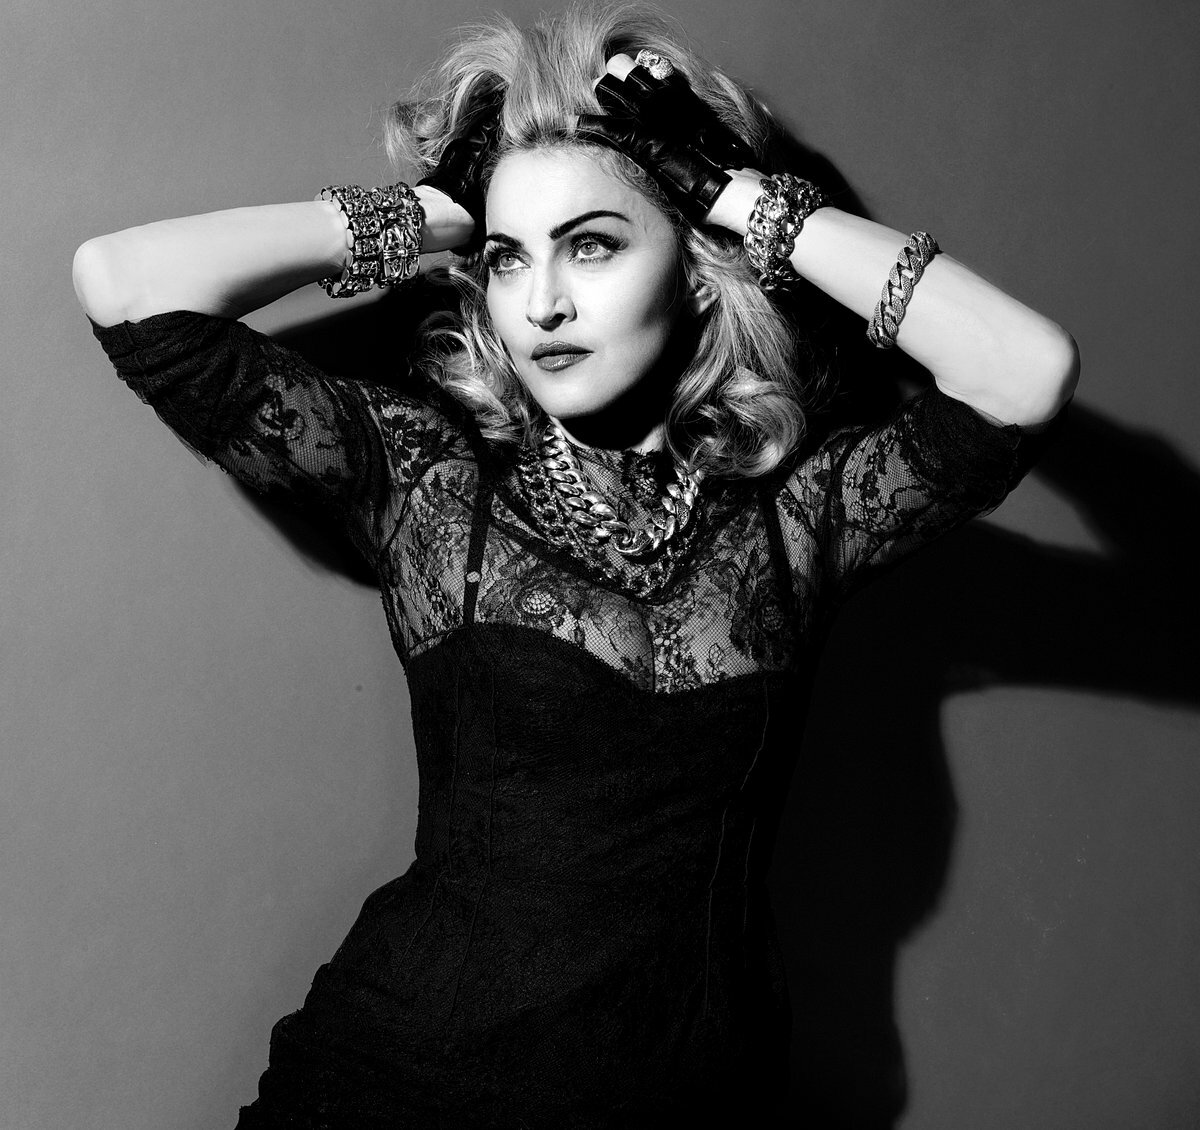 Съёмки фильма о Мадонне отменили из-за поведения певицы